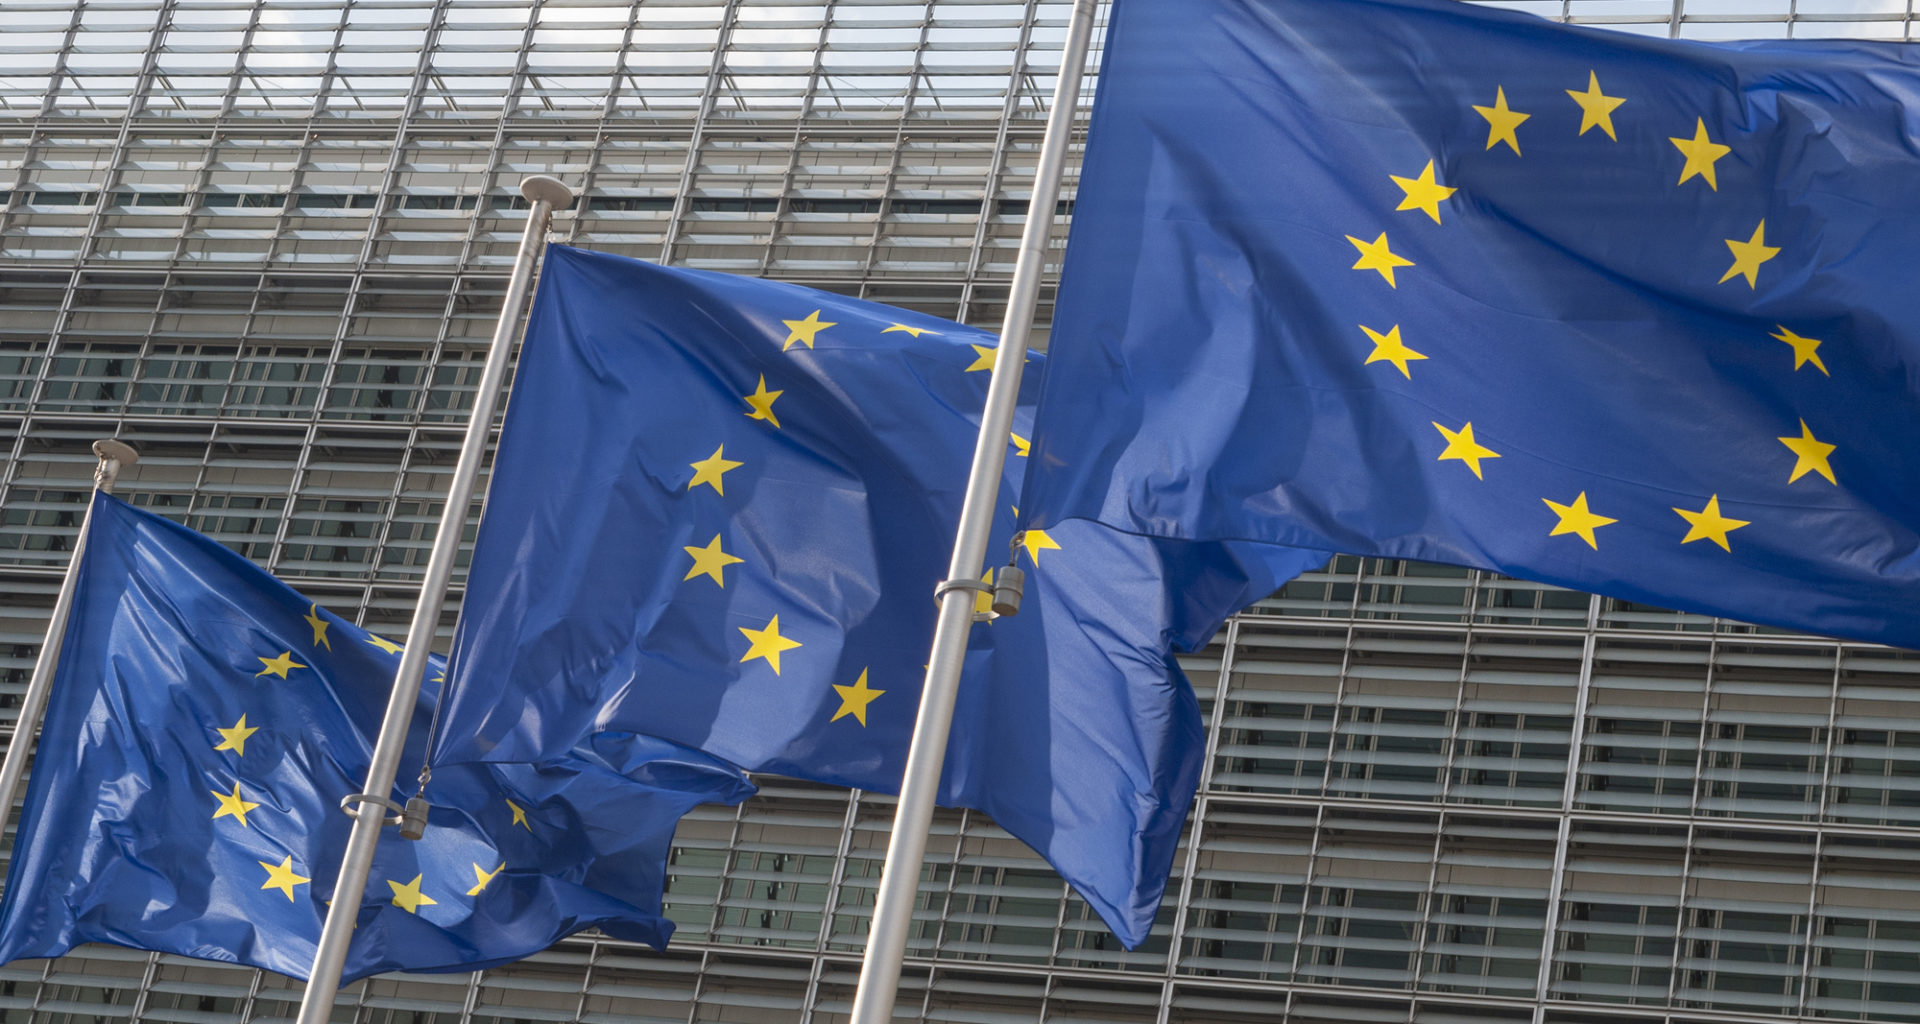 Flag of the European Union, illustrative image. Photo via Eastnews.ua.